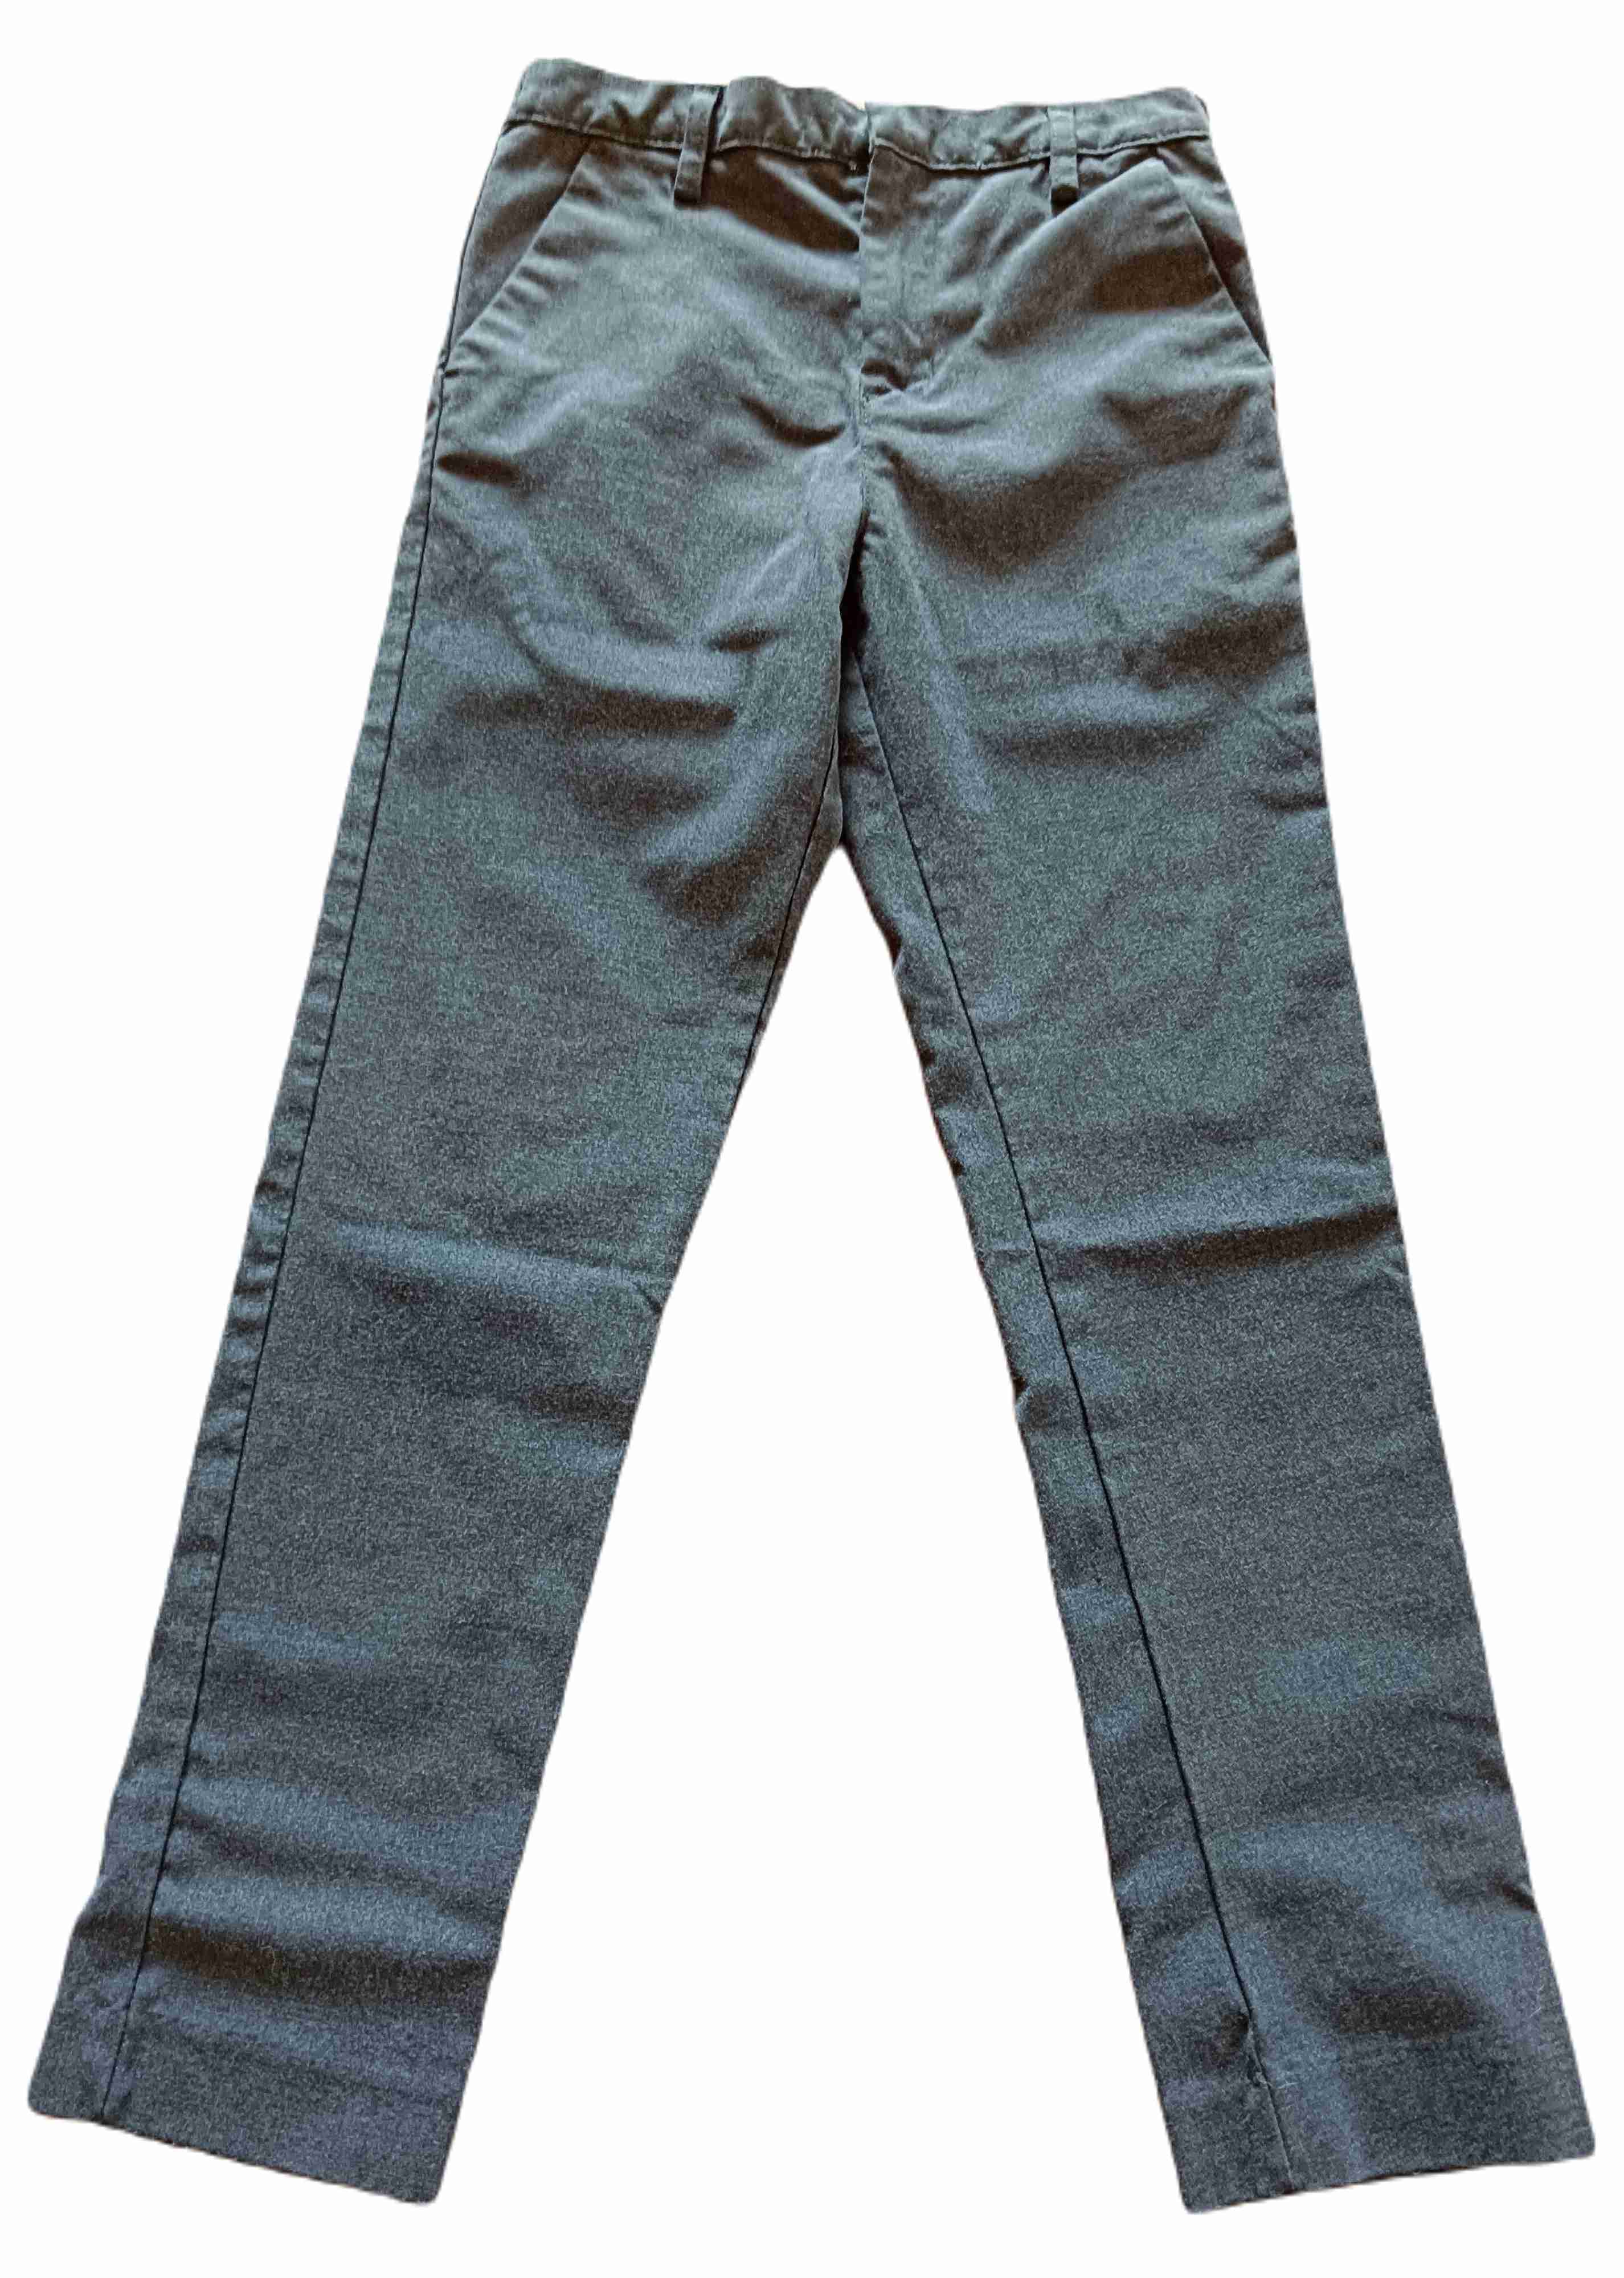 Chlapecké společenské kalhoty 134